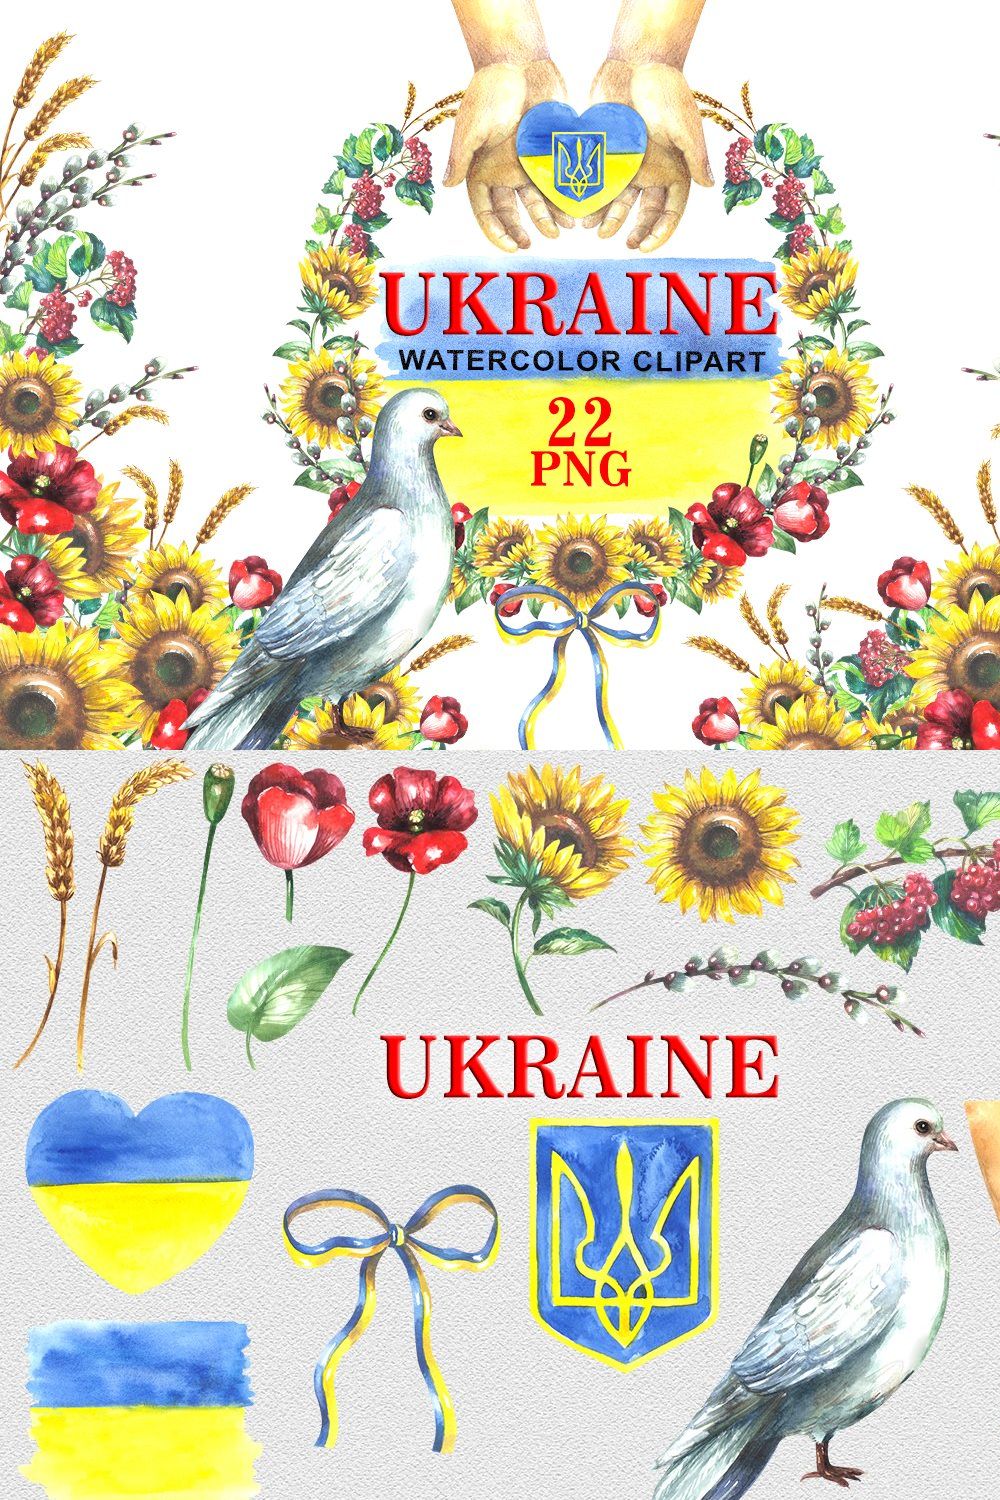 Ukraine Watercolor Clipart pinterest preview image.